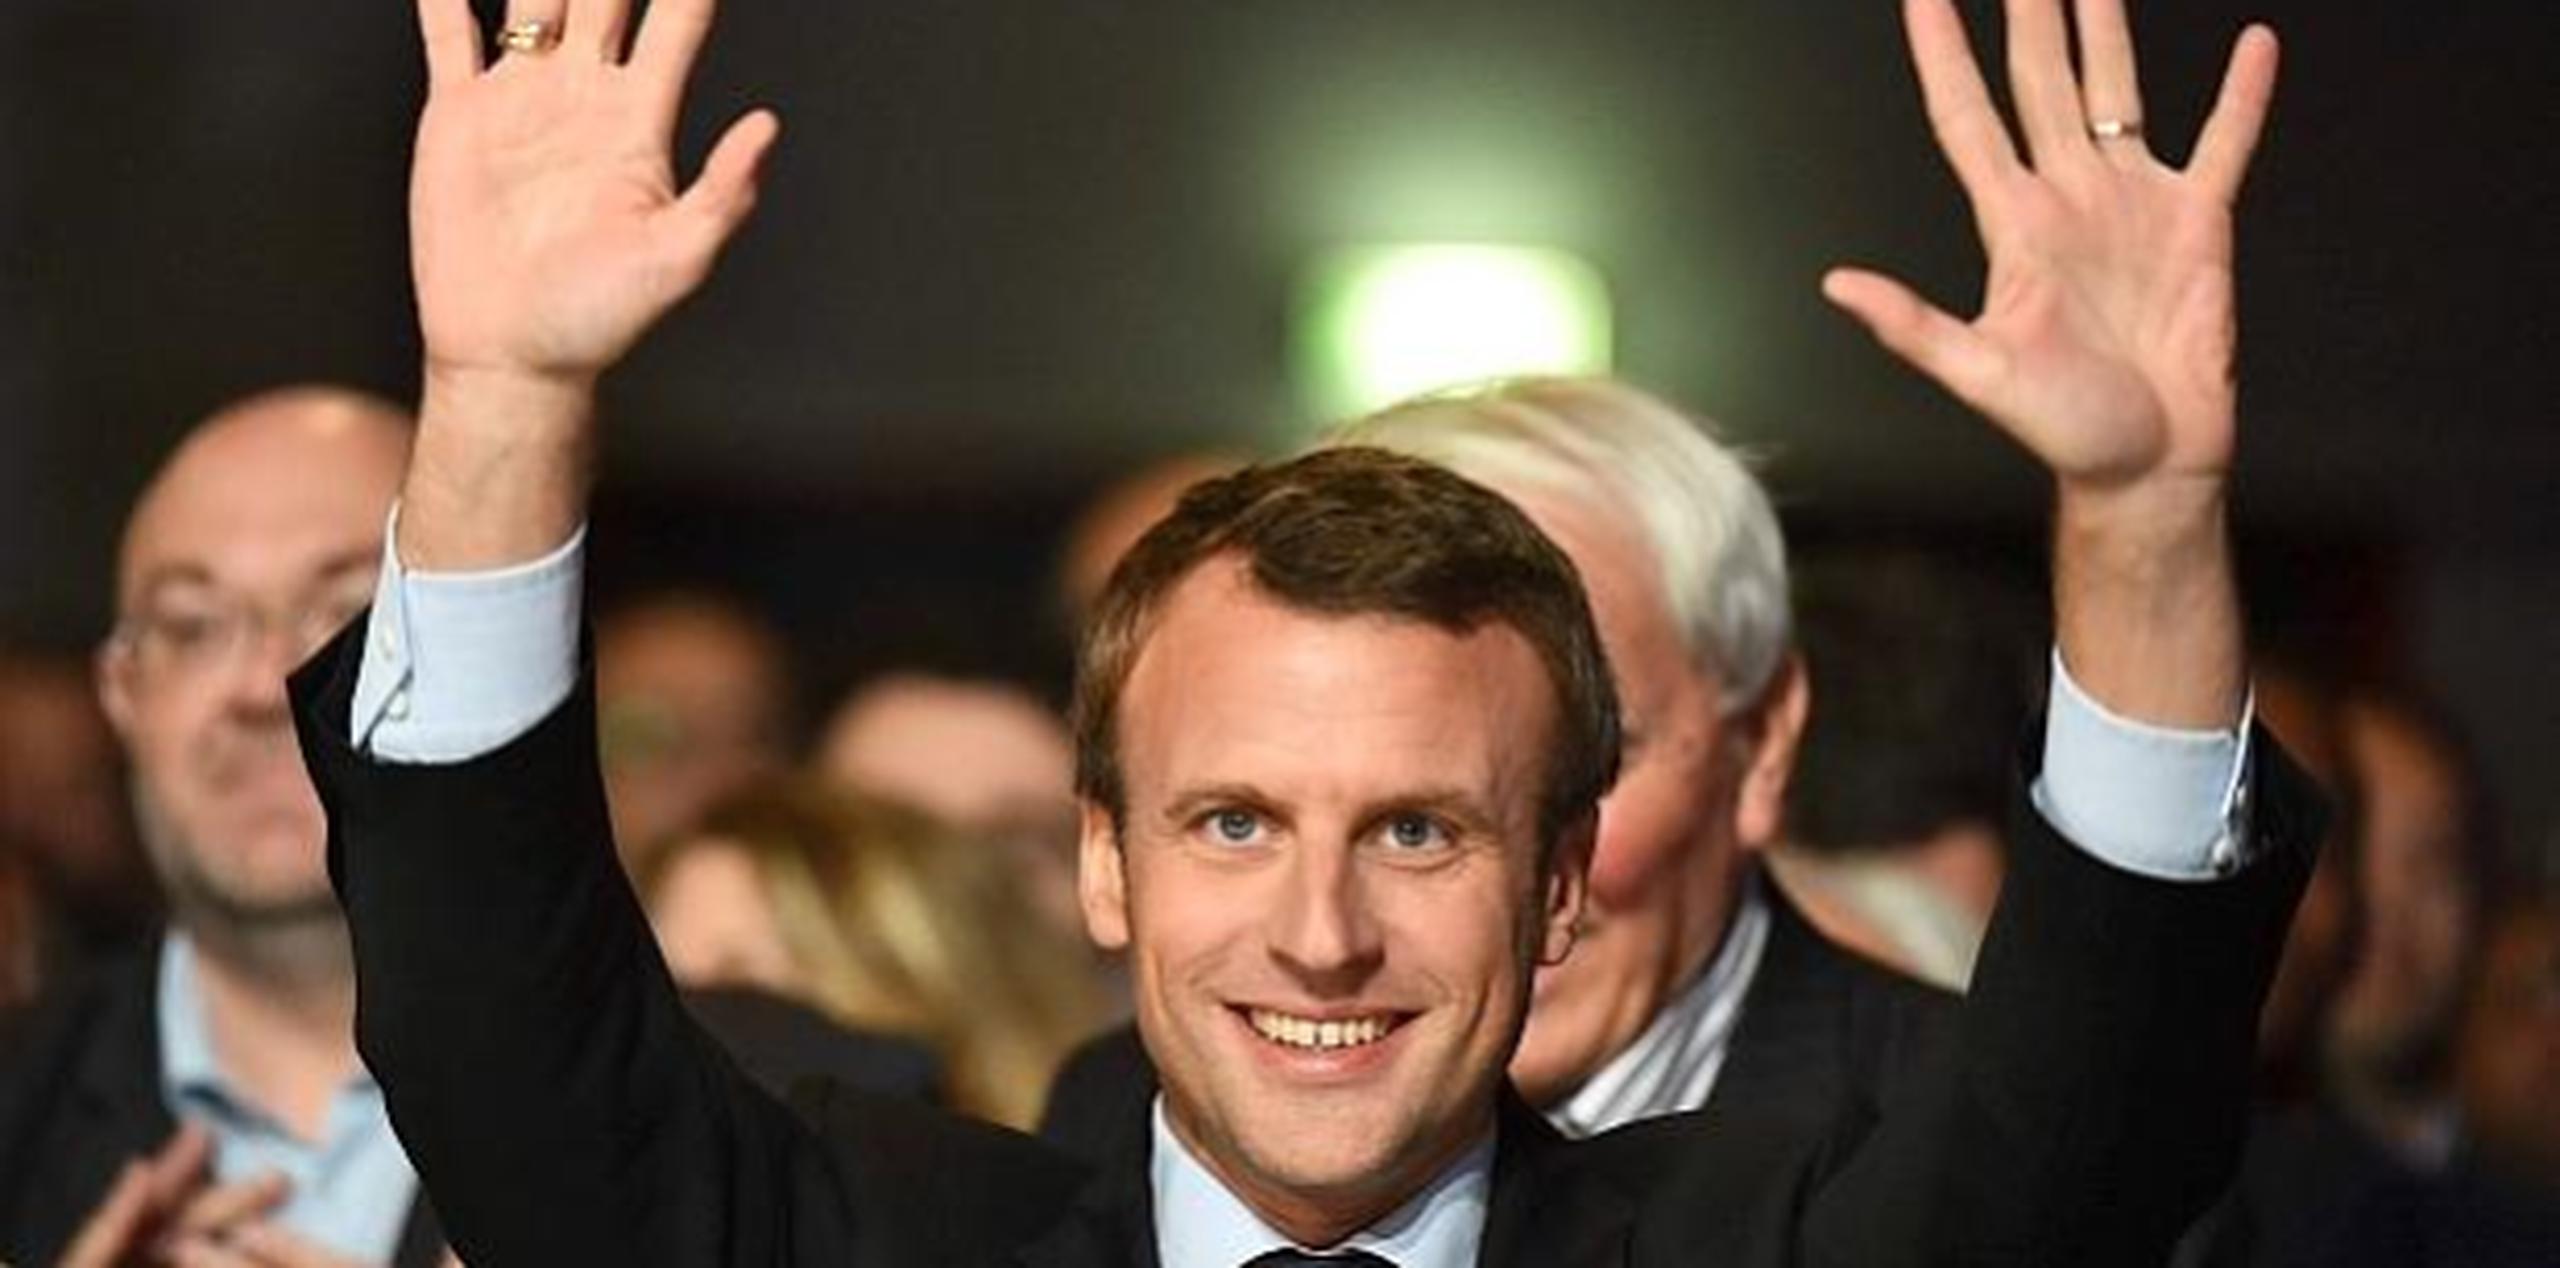 Emmanuel Macron de 39 años. (GDA)